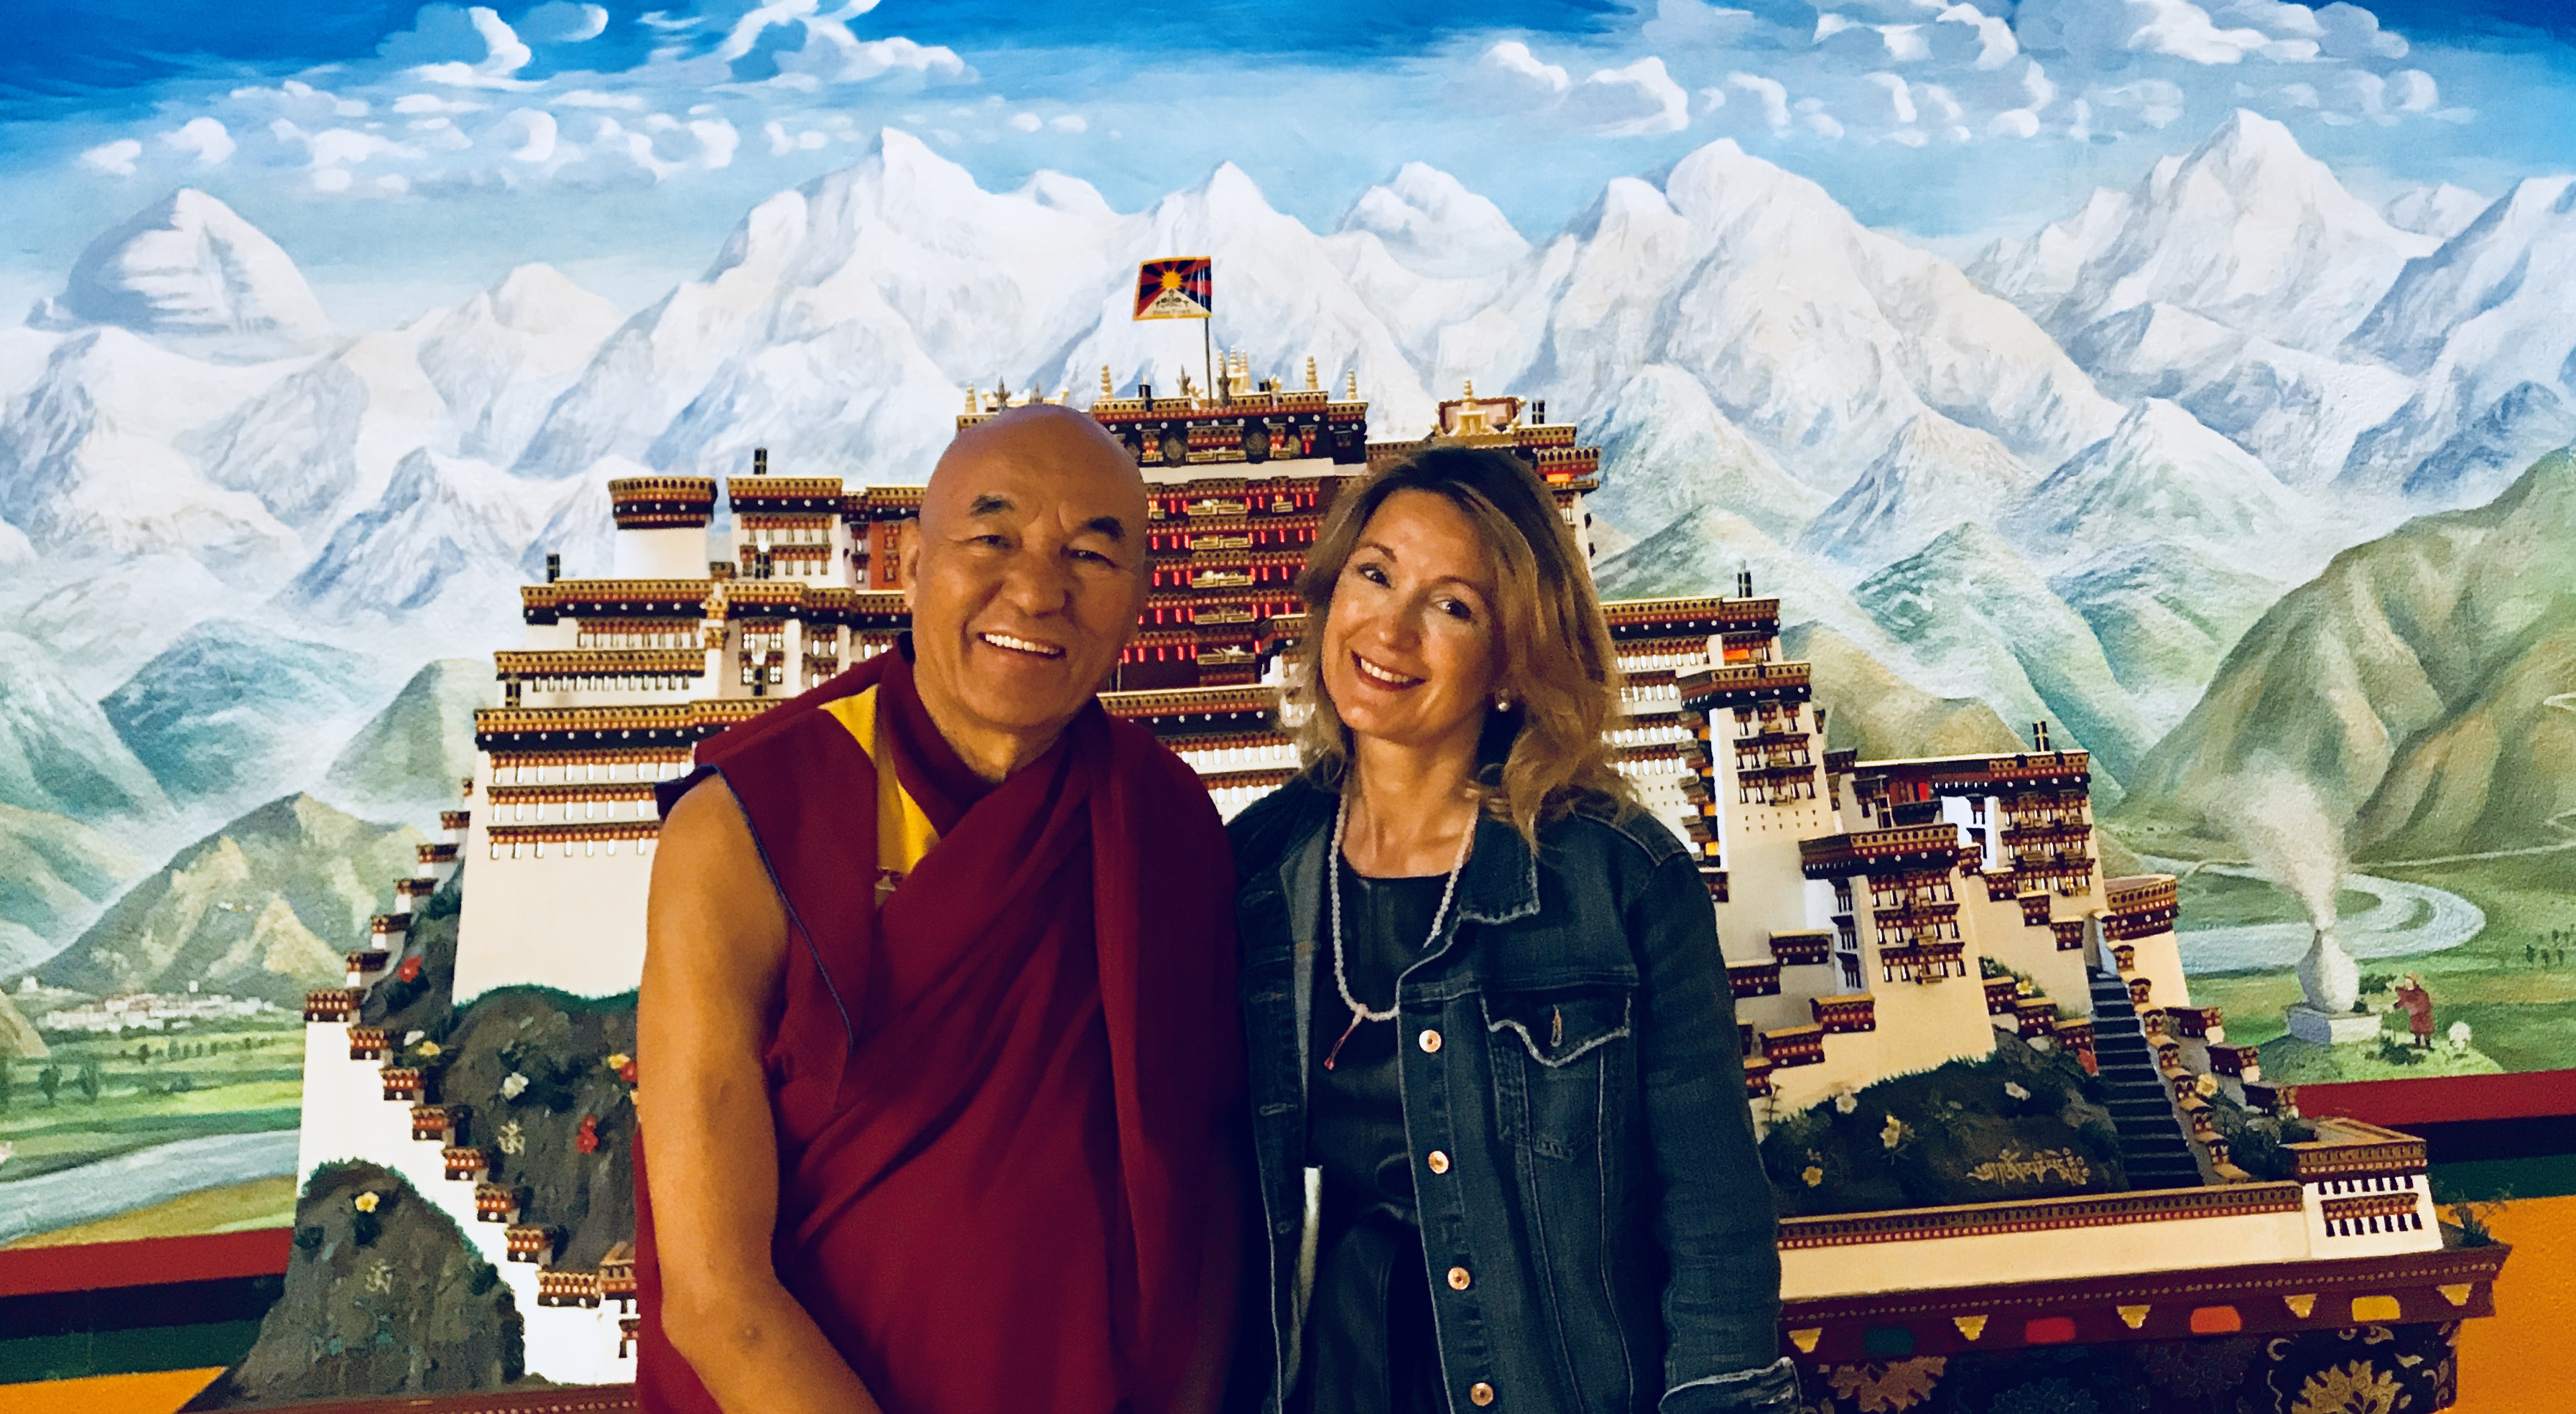 El karma i la felicitat, amb el lama Thubten Wangchen